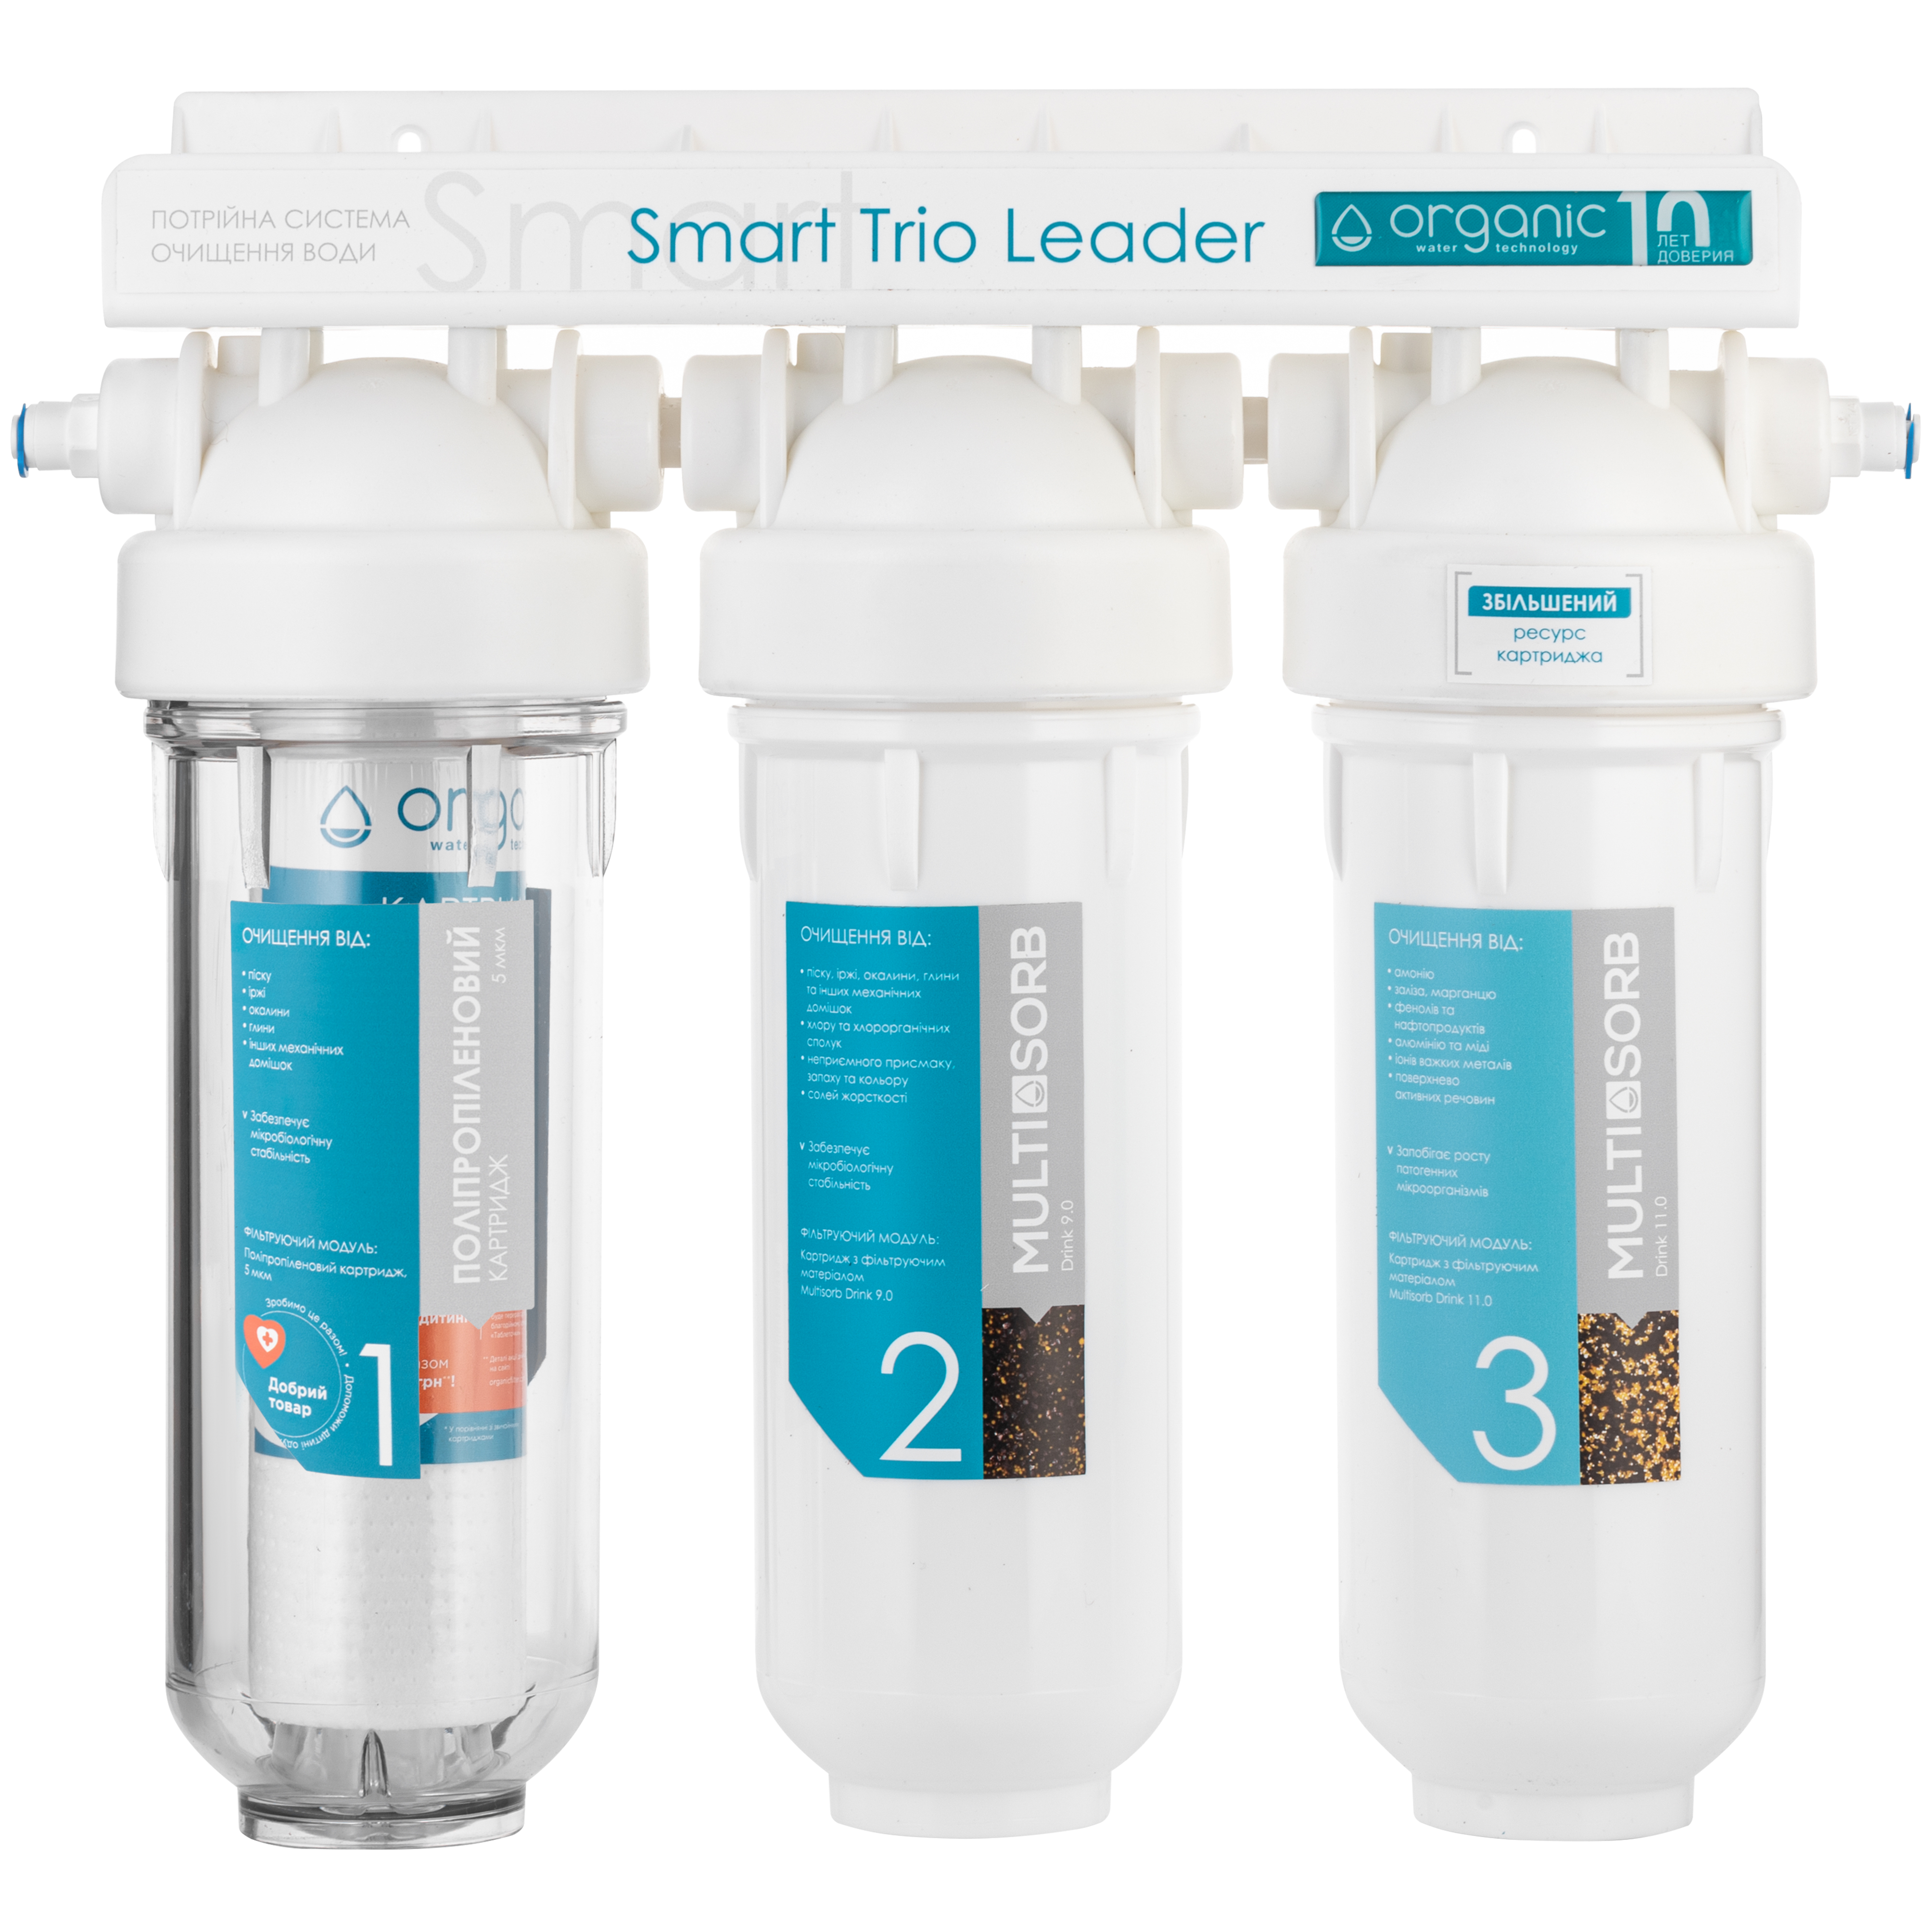 Фильтр для воды Organic Smart TRIO LEADER в интернет-магазине, главное фото